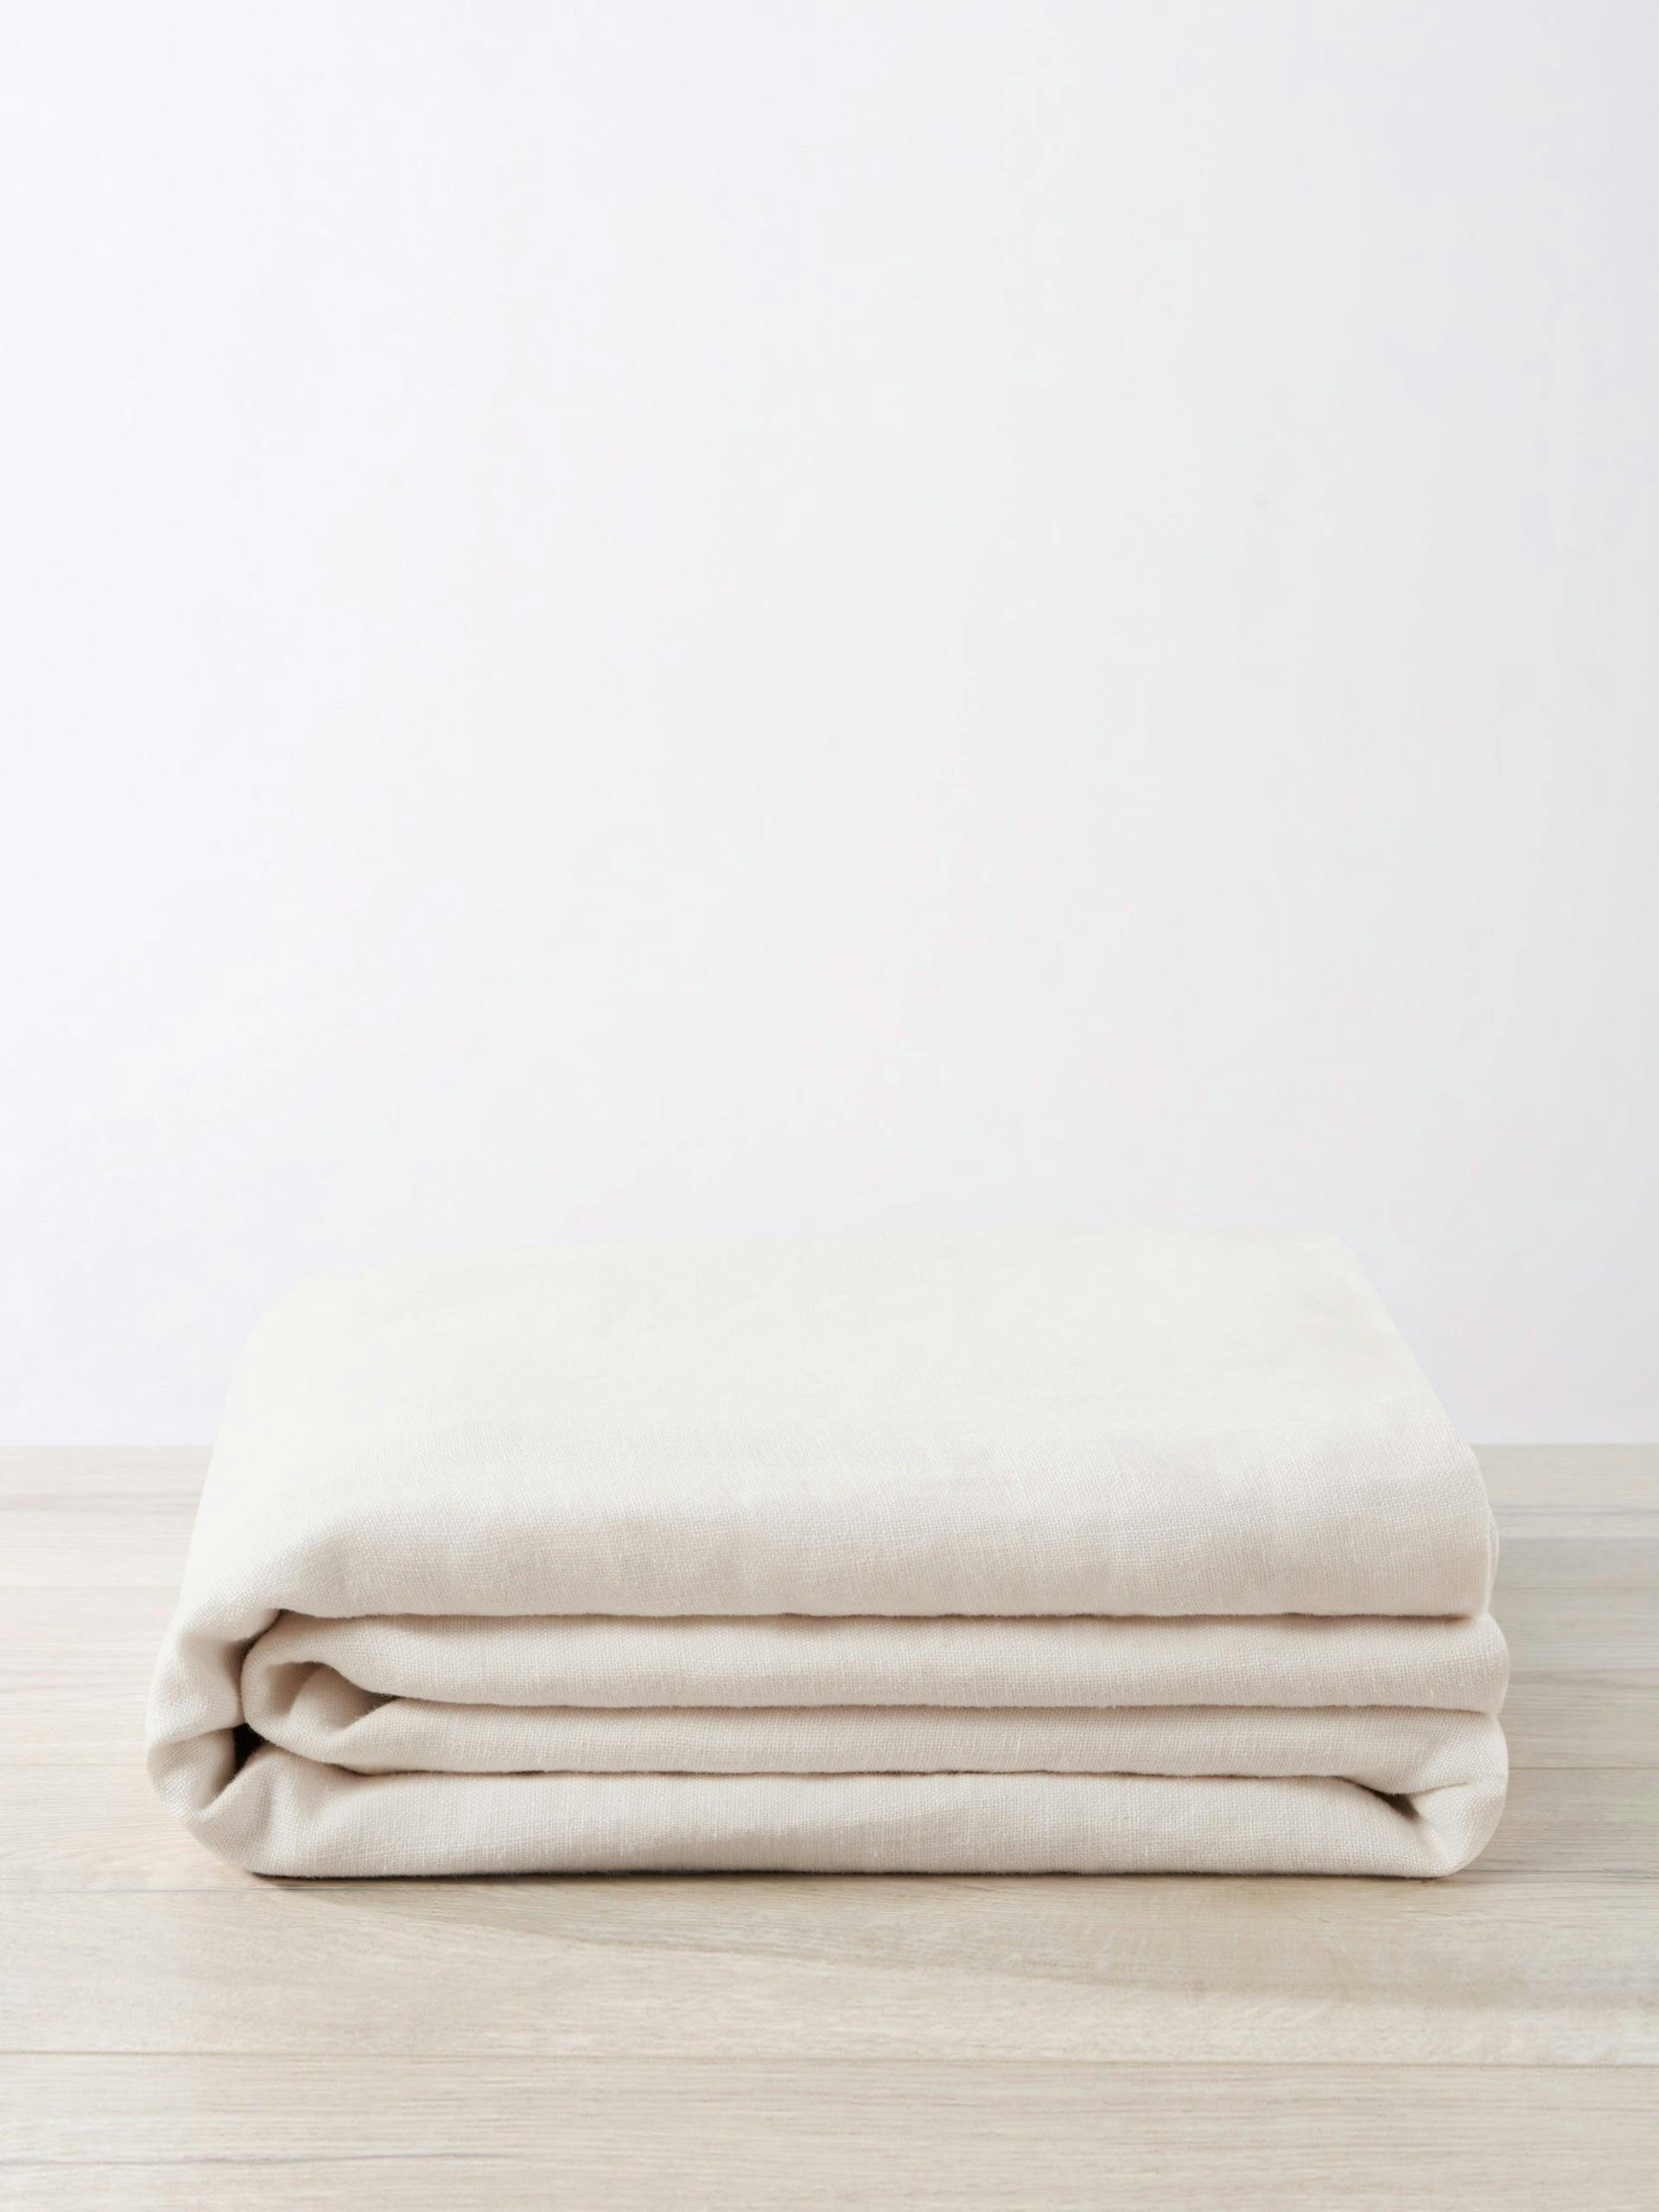 Heavyweight Linen bedcover, ivory